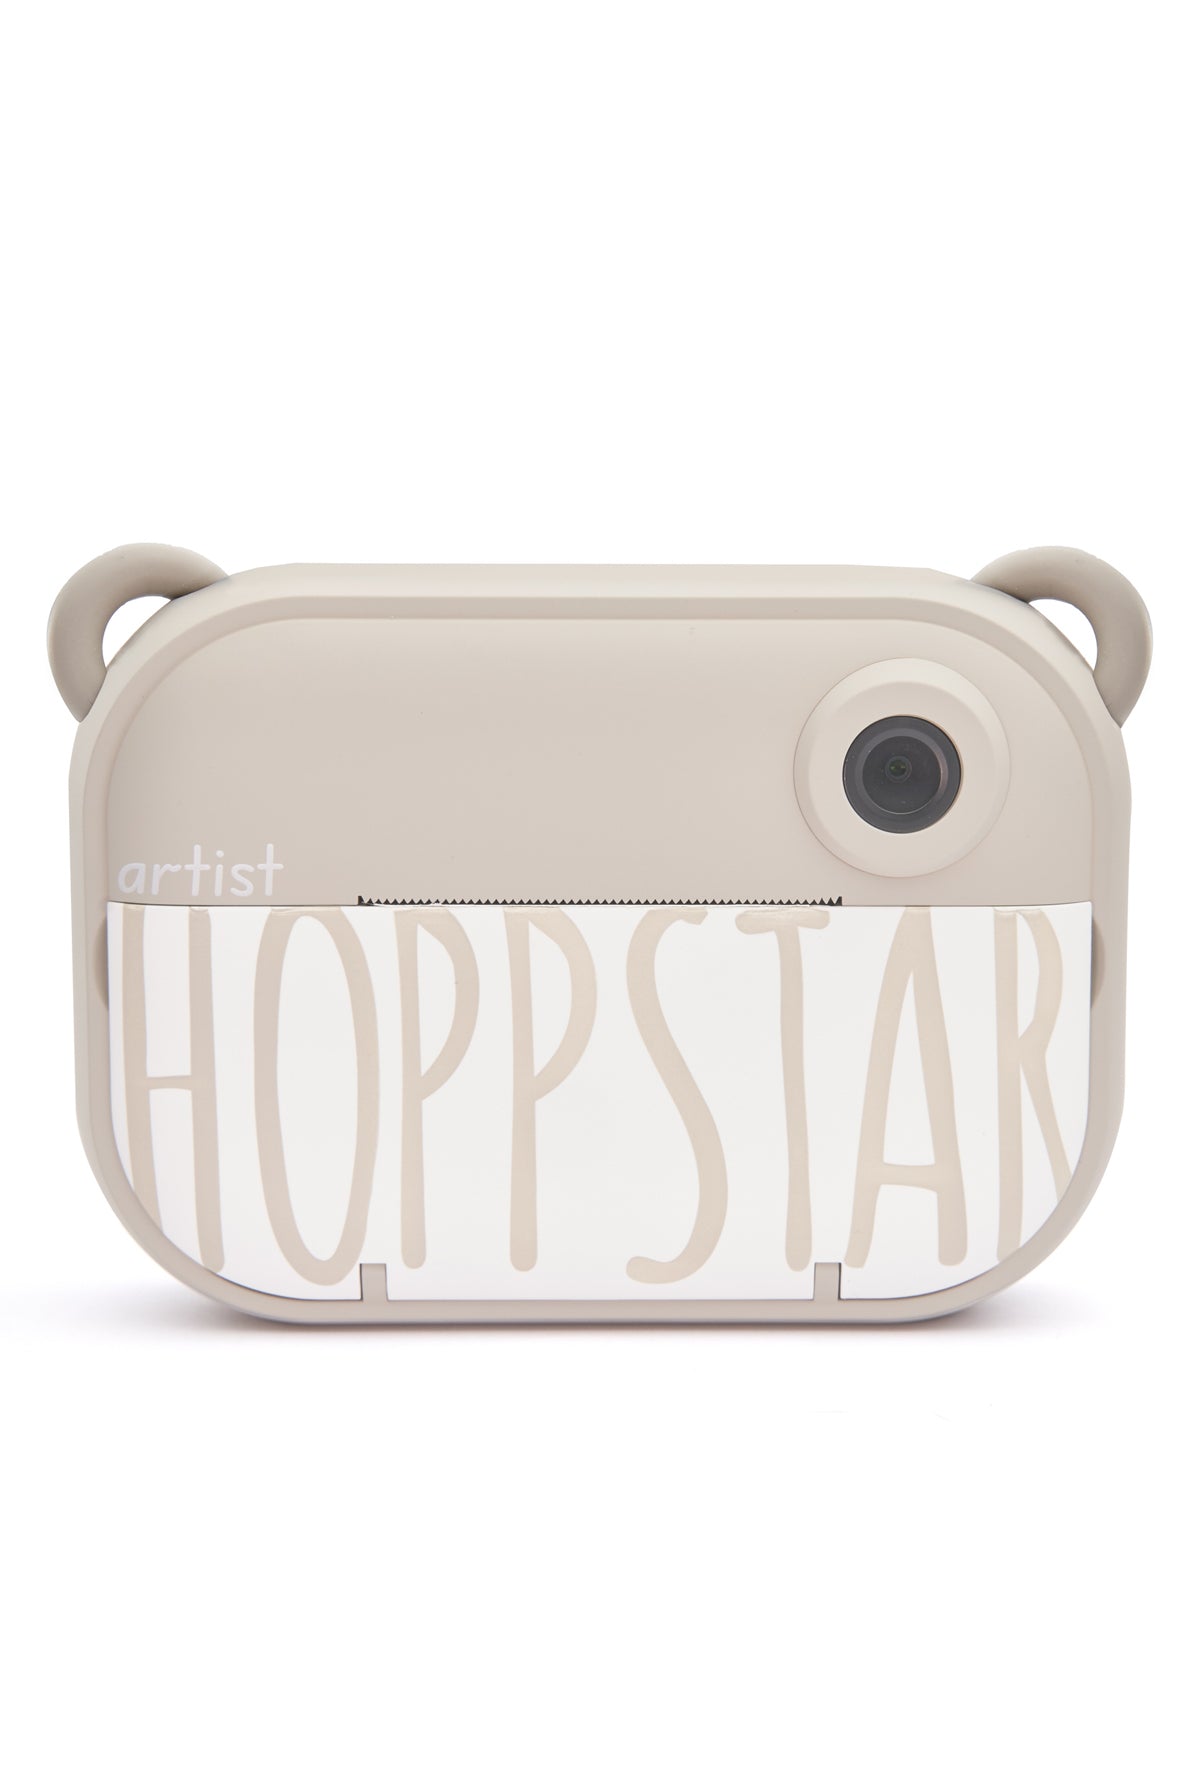 Hoppstar Artist Oat Digital Camera